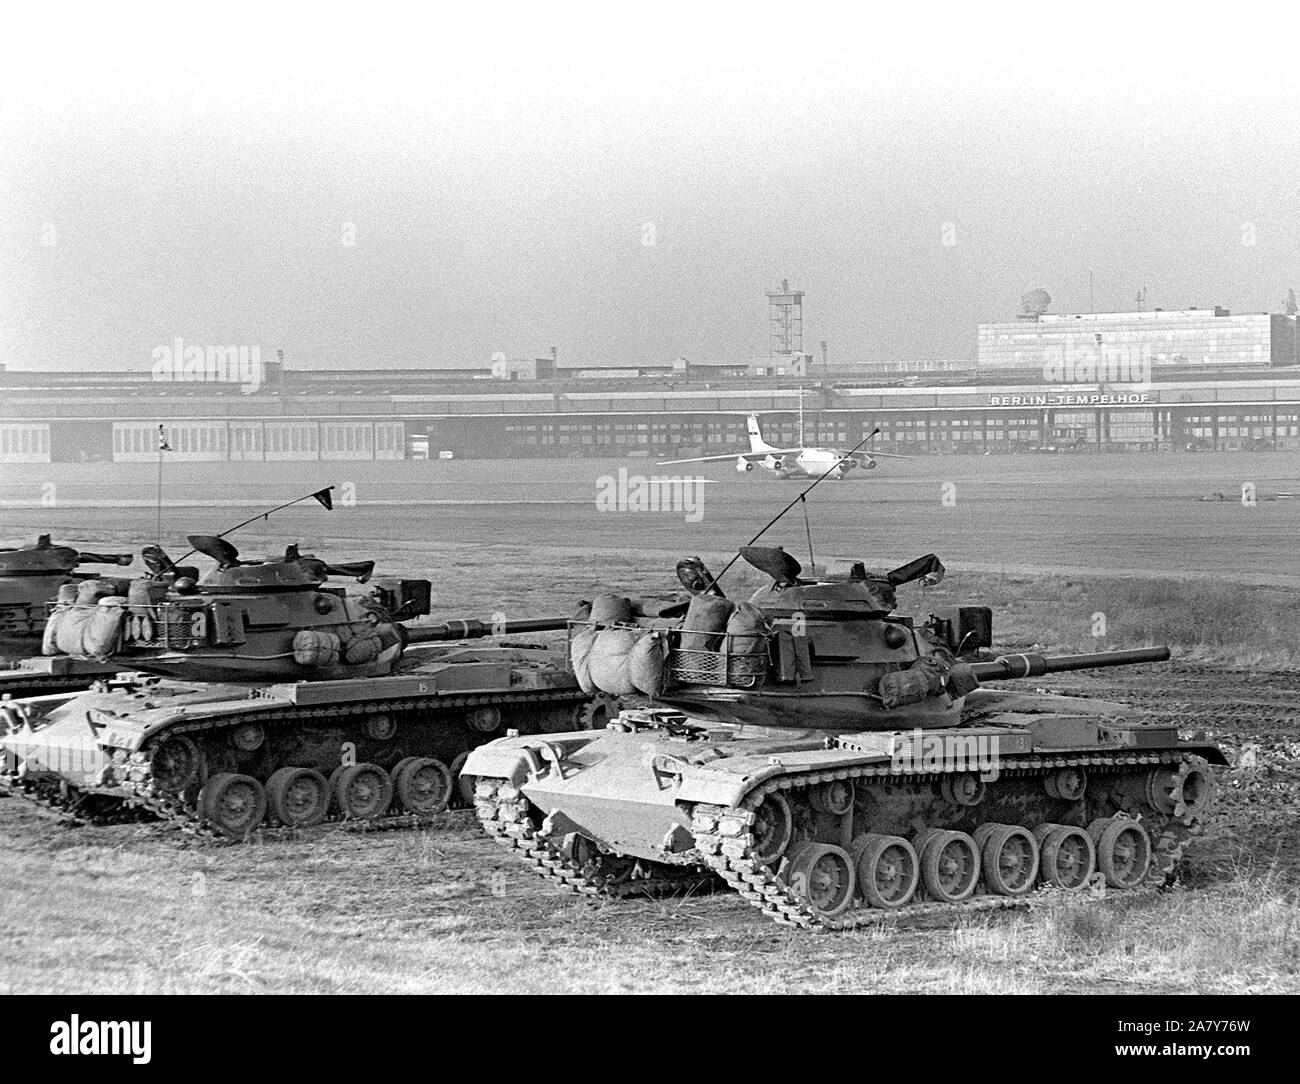 M-60 principale battaglia serbatoi di Co. F, quarantesimo Armor, Berlino Bde., subisce una combustione a secco le competenze della formazione a Tempelhof aeroporto centrale. Foto Stock